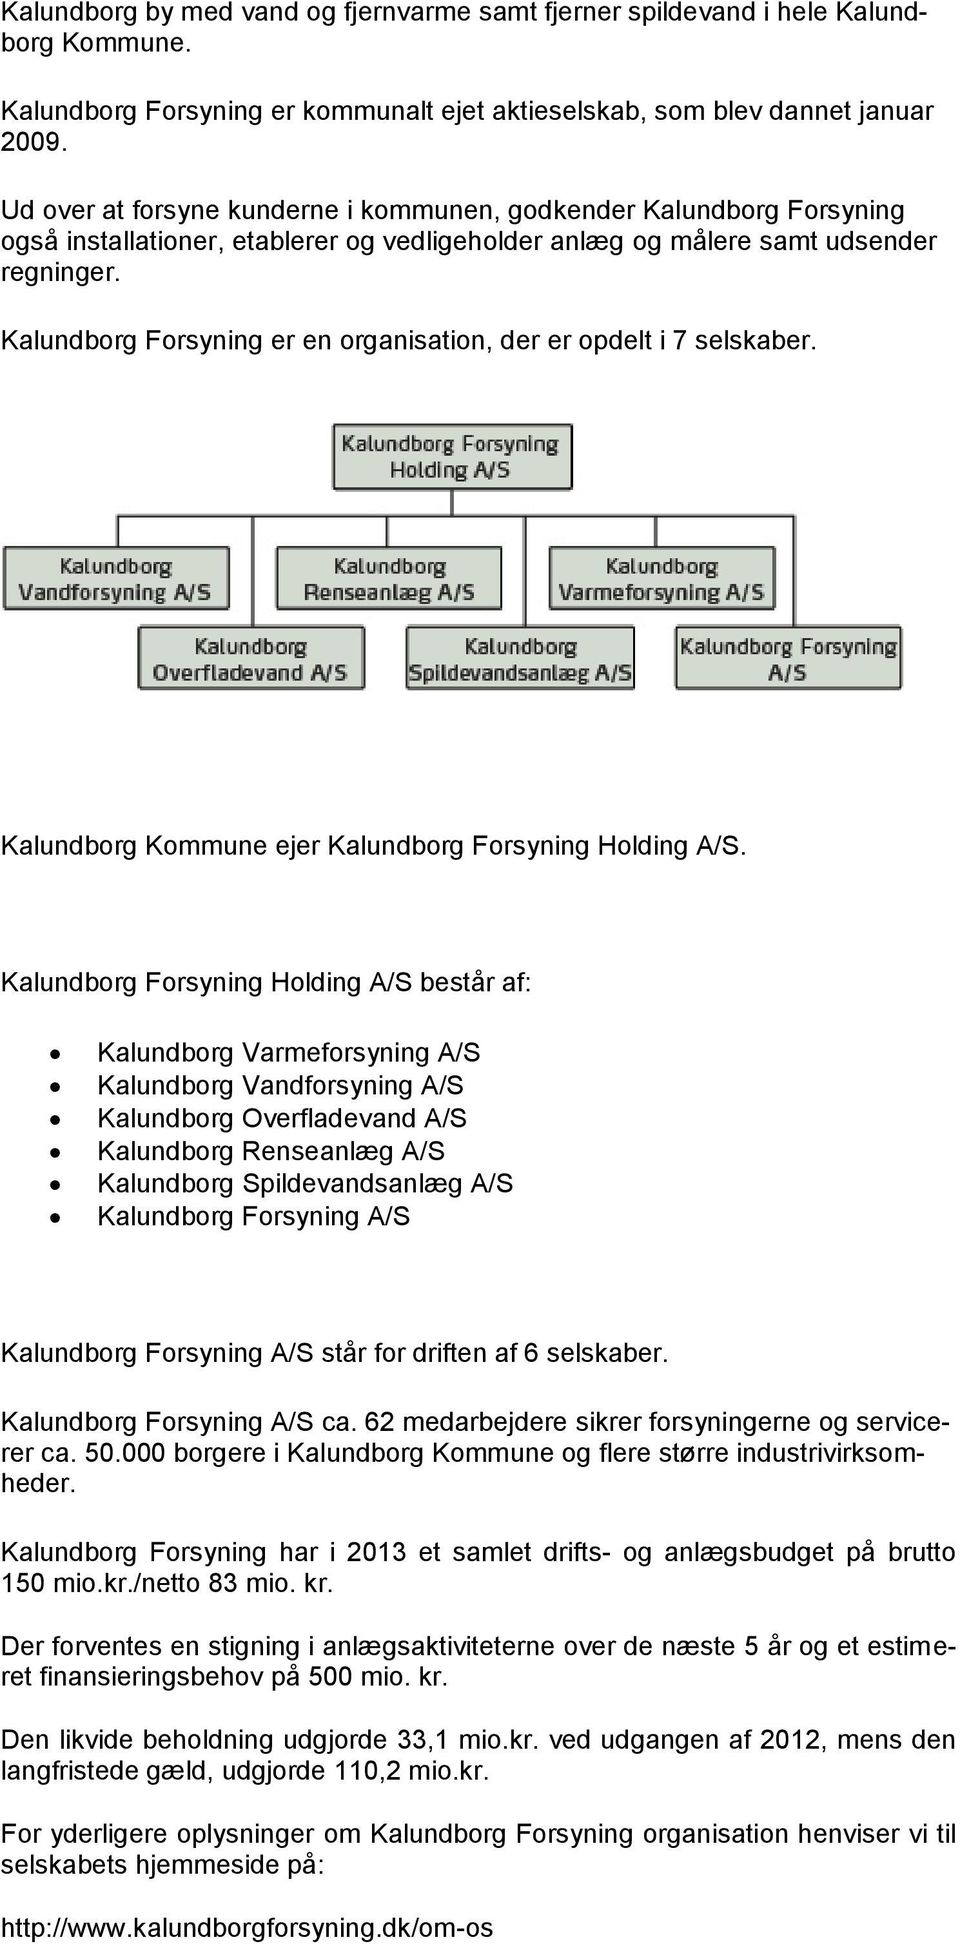 Kalundborg Forsyning er en organisation, der er opdelt i 7 selskaber. Kalundborg Kommune ejer Kalundborg Forsyning Holding A/S.